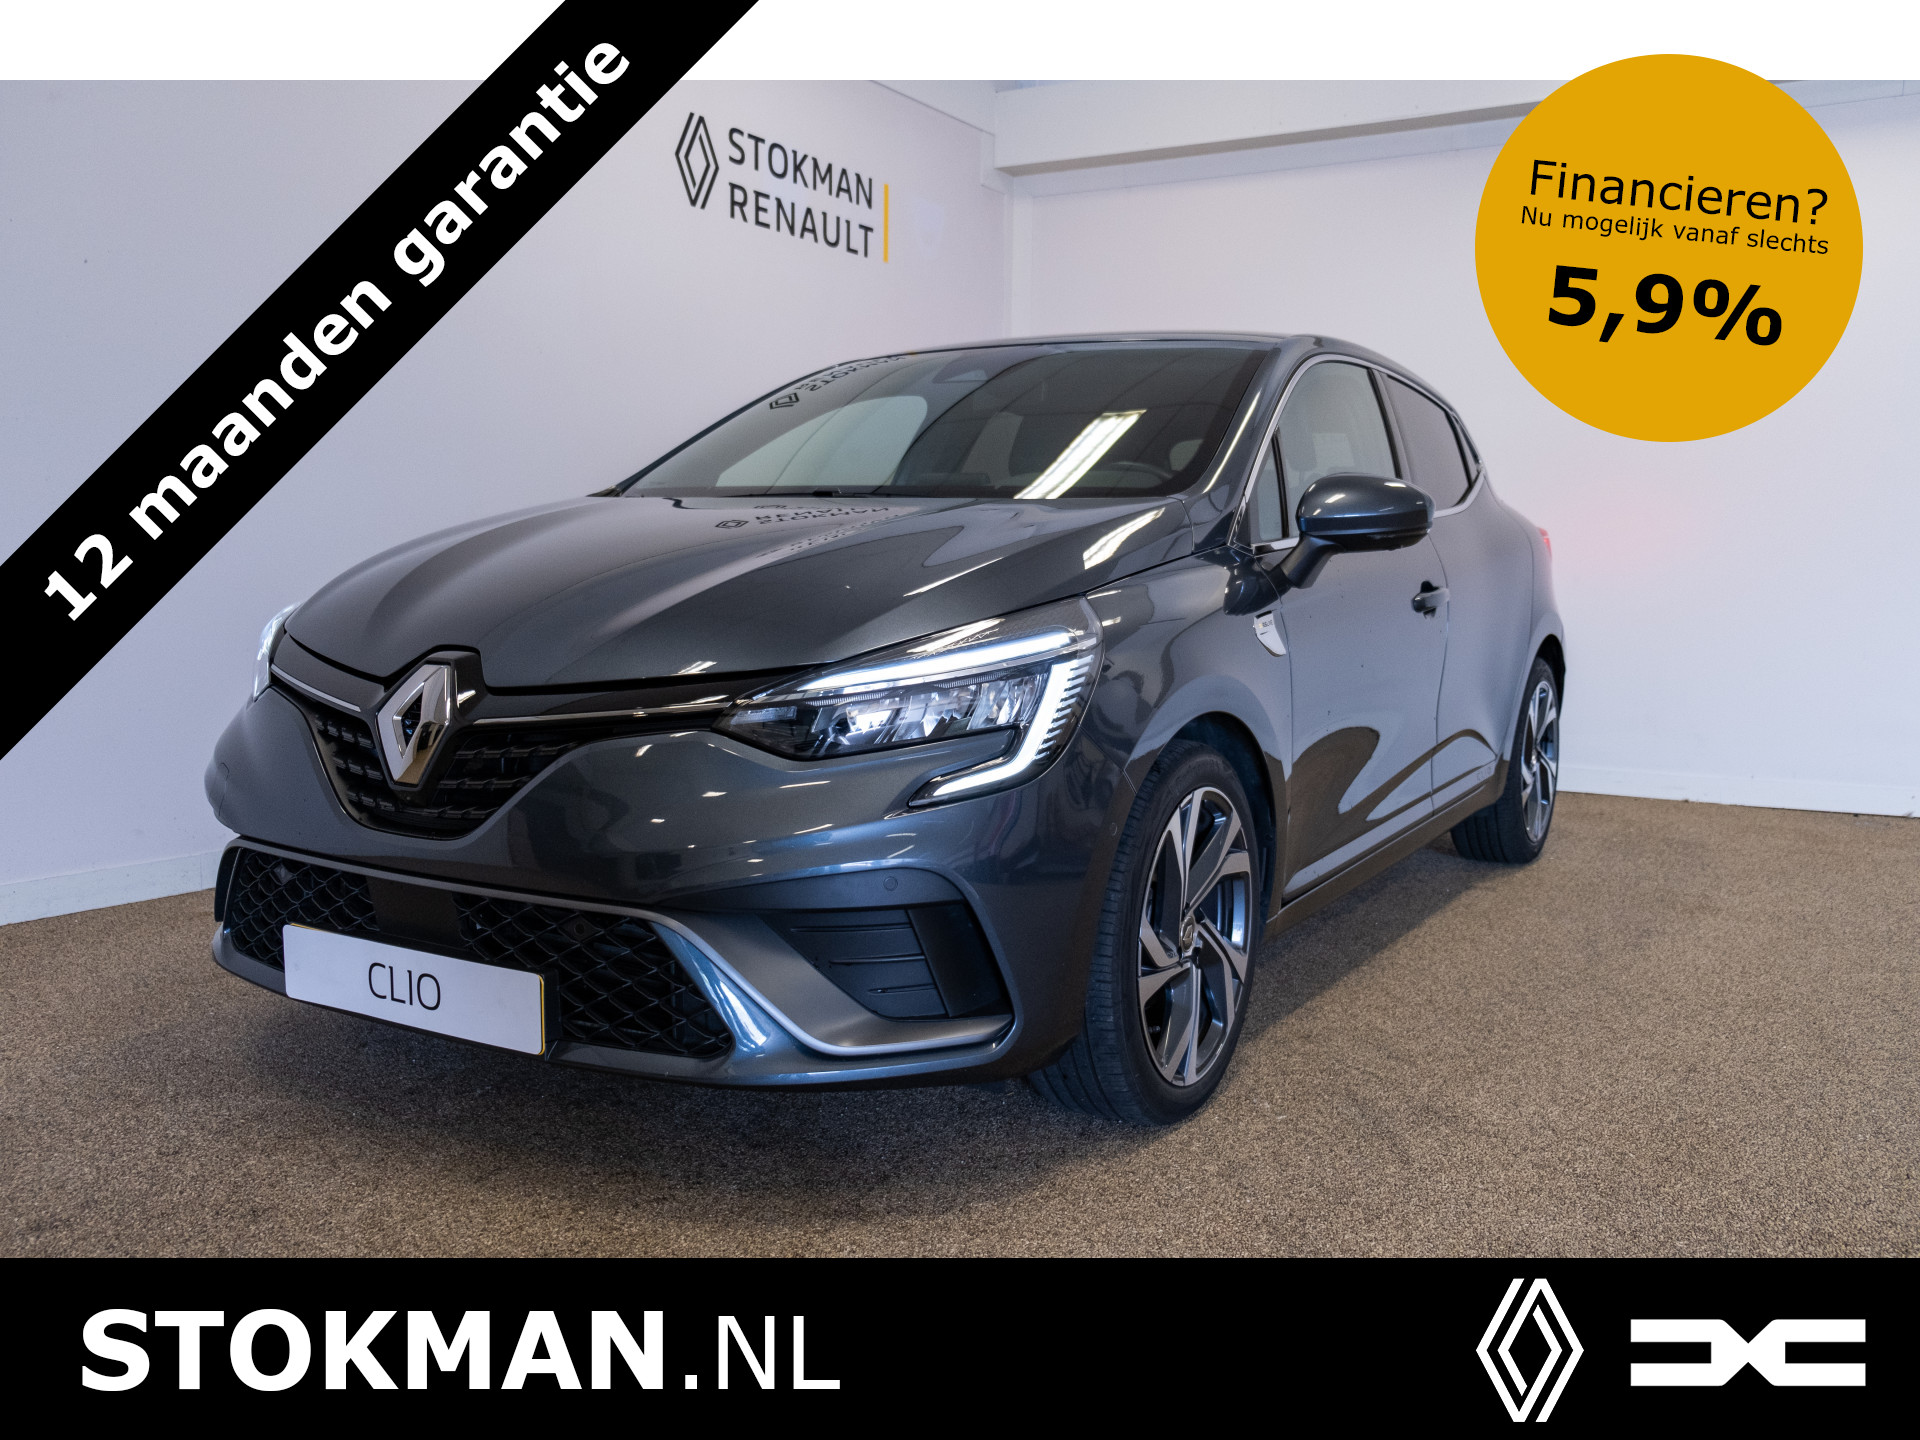 Renault Clio 1.0 TCe R.S. Line | 360 Camera | Easy Parking | Groot scherm | incl. Bovag rijklaarpakket met 12 maanden garantie bij viaBOVAG.nl